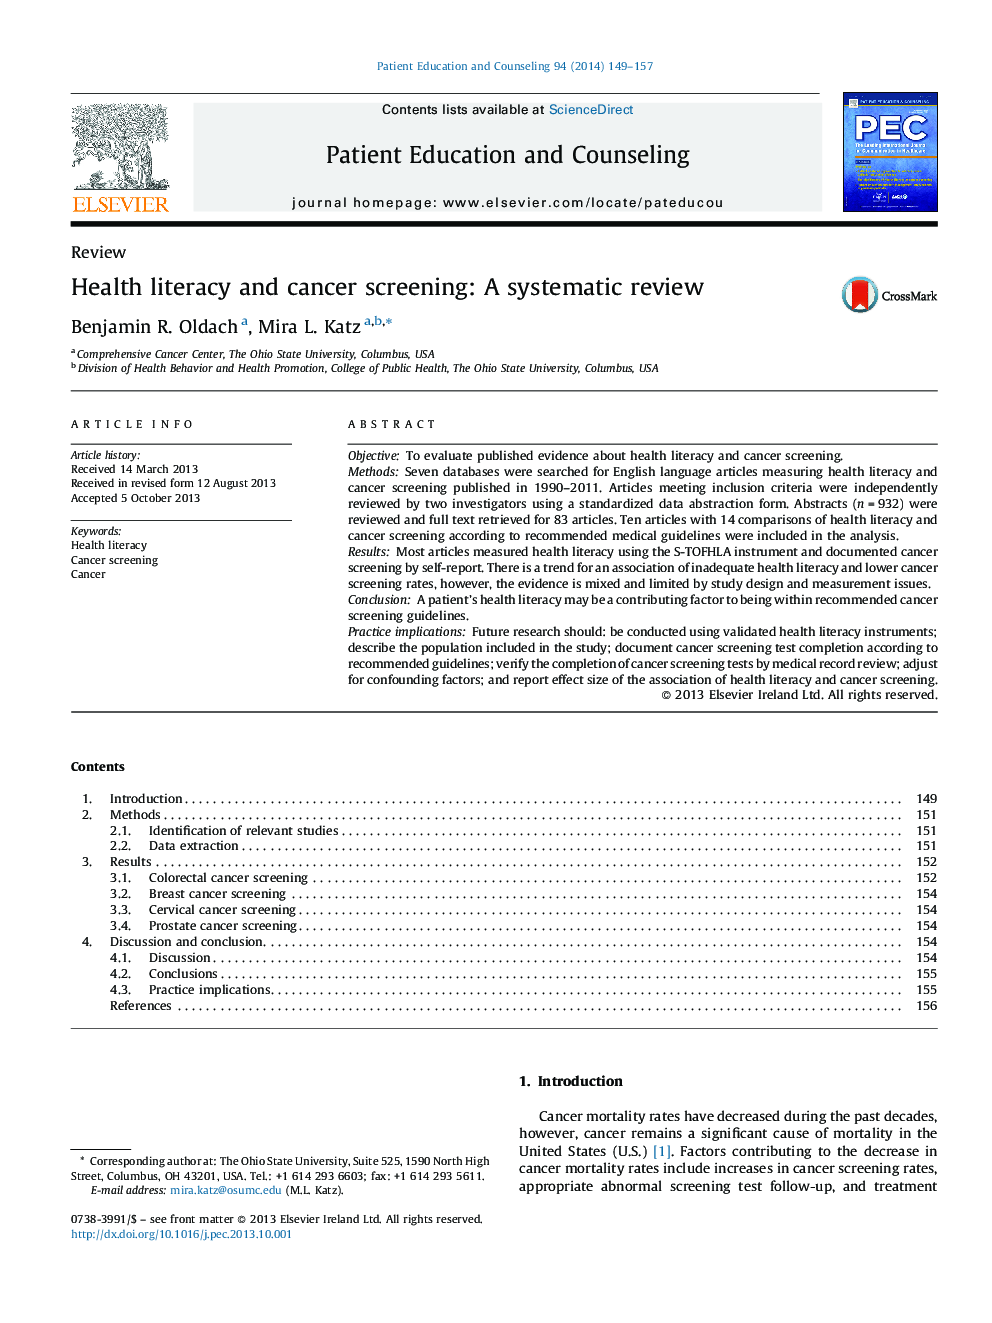 سواد بهداشتی و غربالگری سرطان: بررسی سیستماتیک 